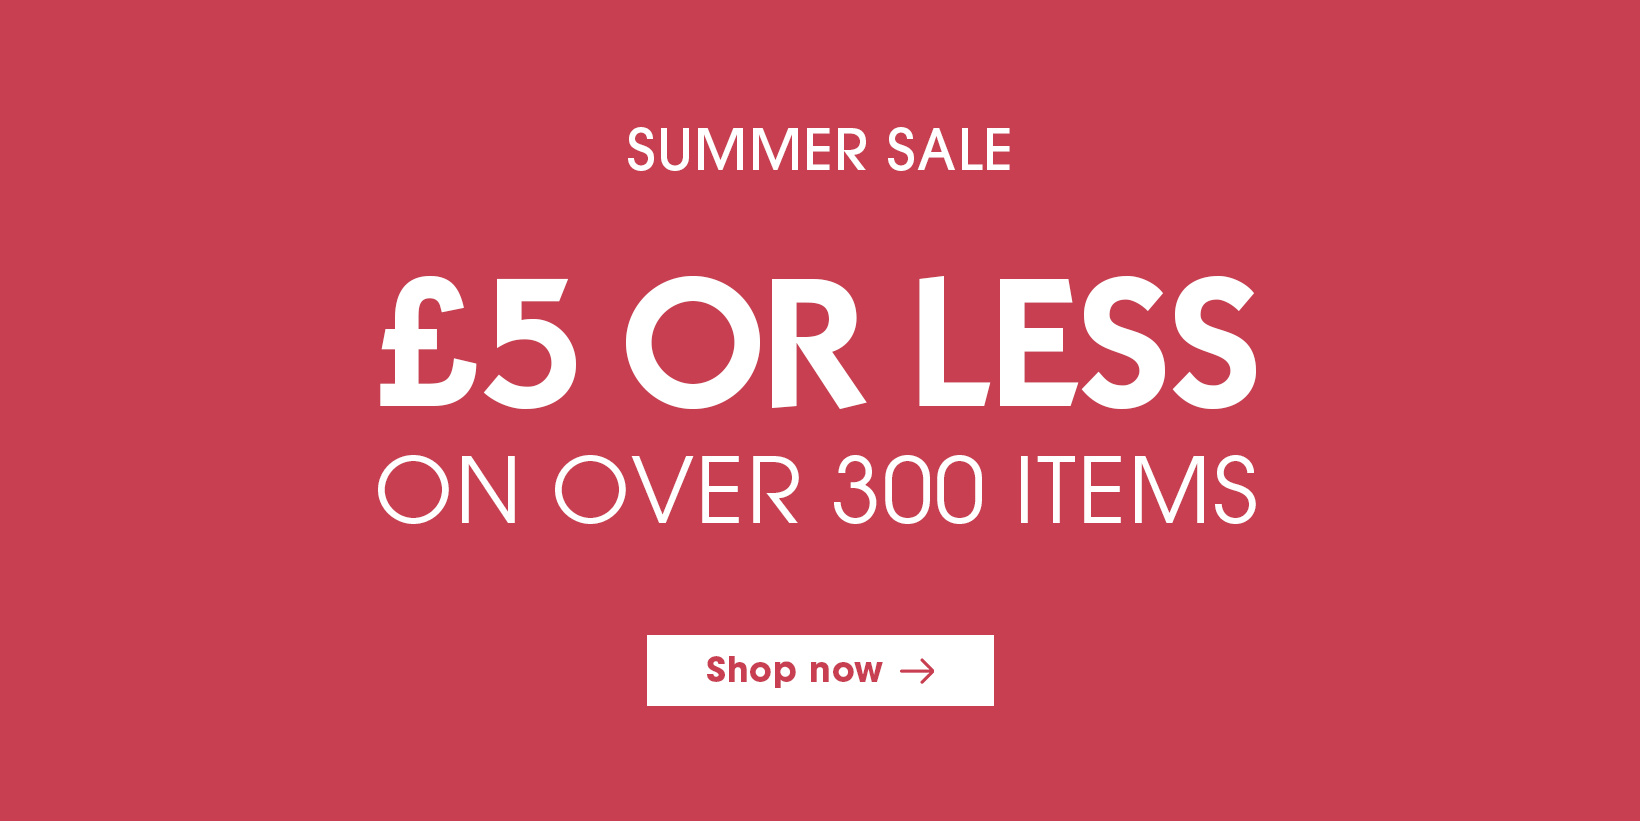 Summer Sale under £10